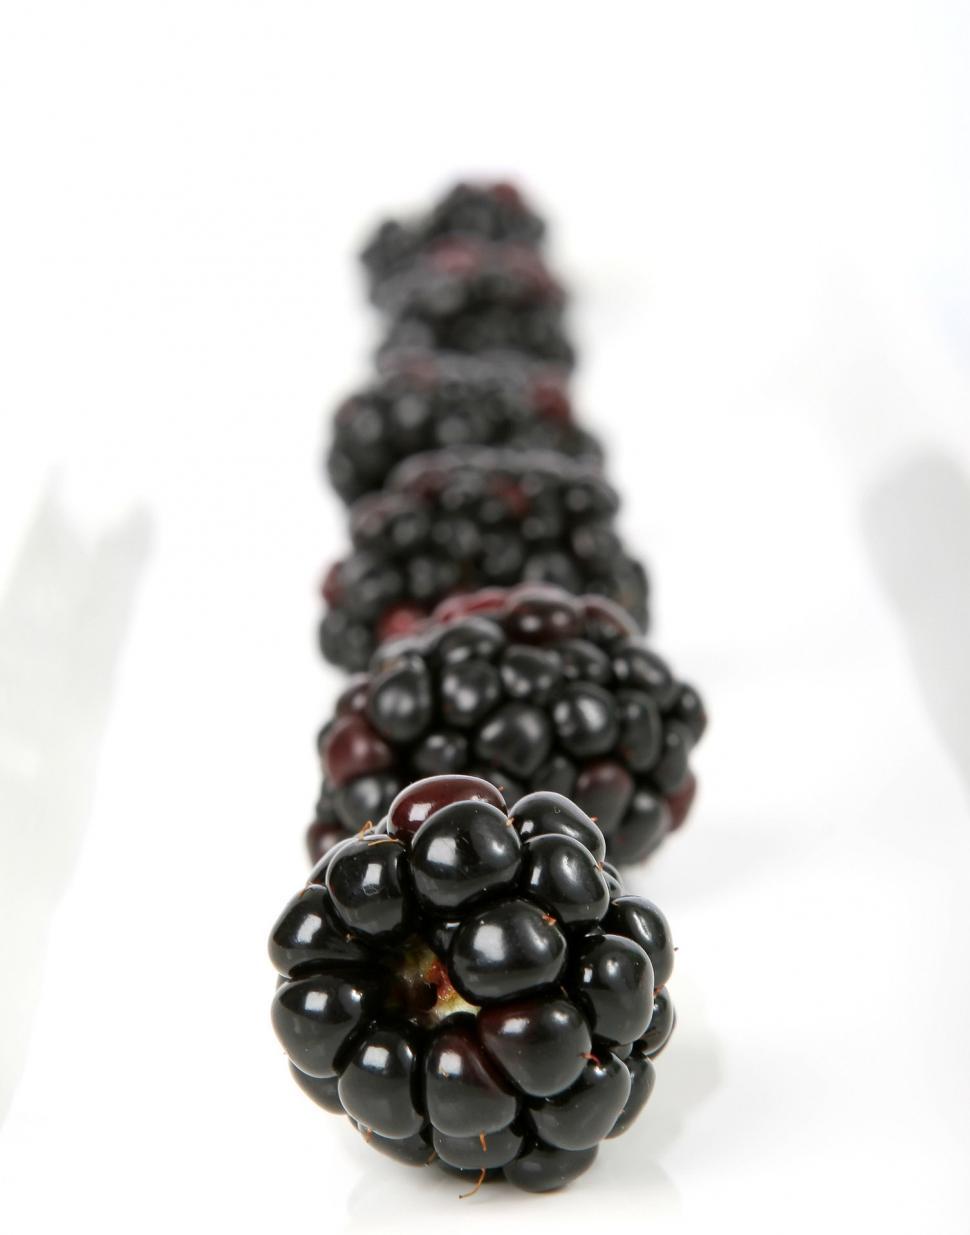 Free Image of Pile of Blackberries 